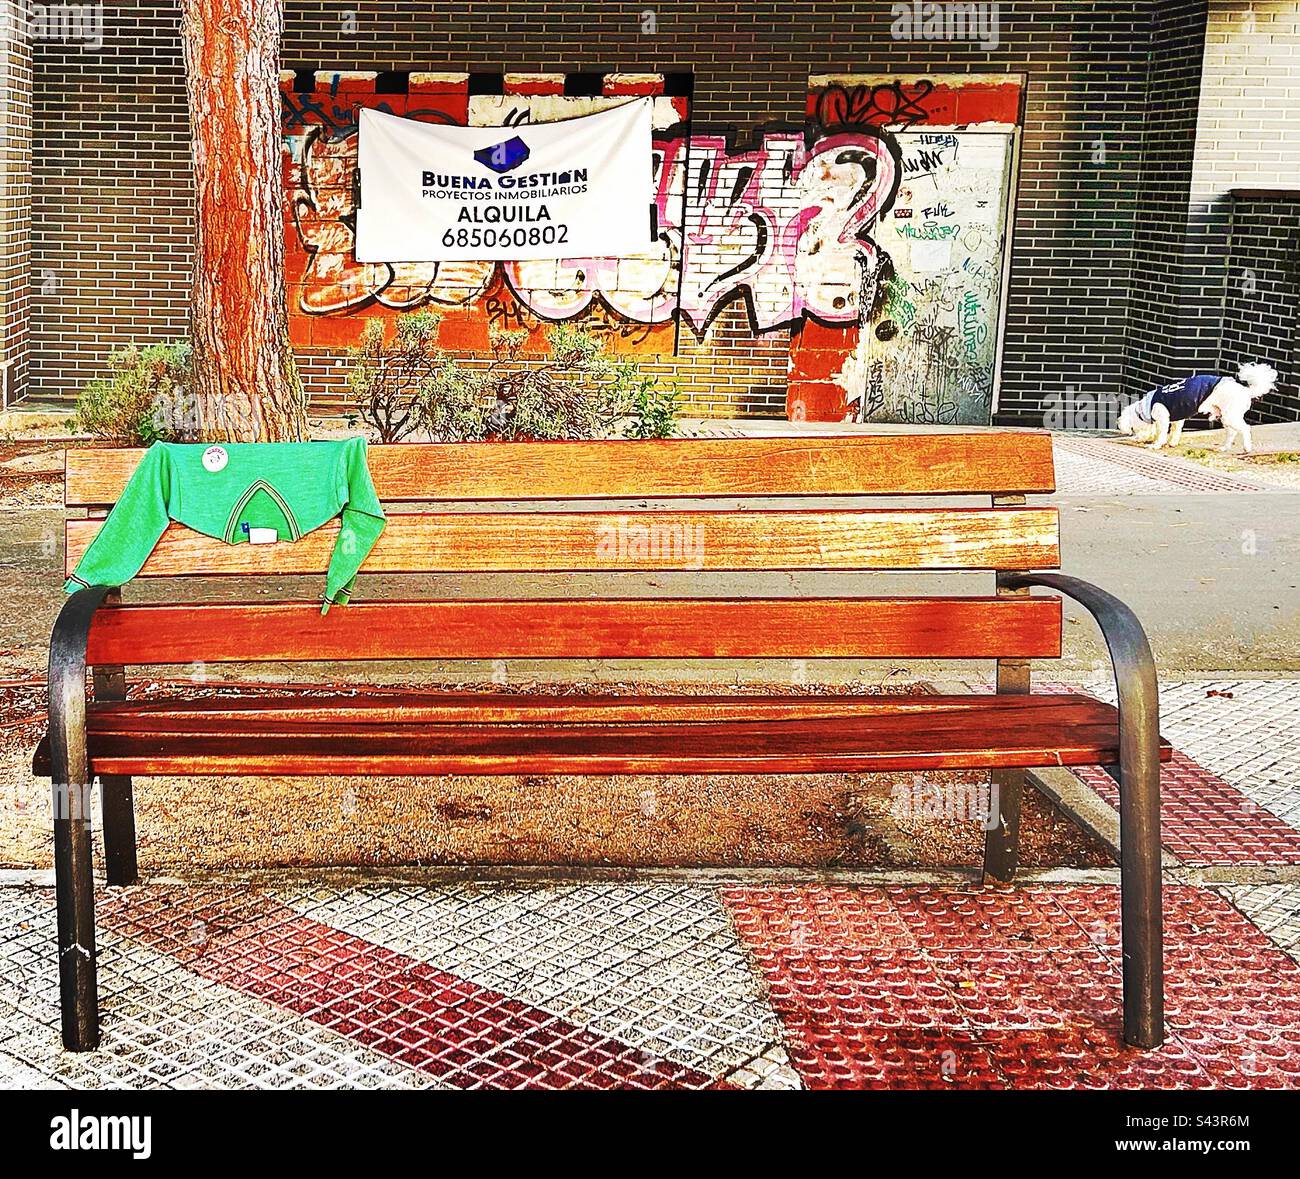 Le pull vert d'un enfant en bas âge est soigneusement drapé sur un banc dans la rue, probablement près de l'endroit où il a été perdu. Banque D'Images